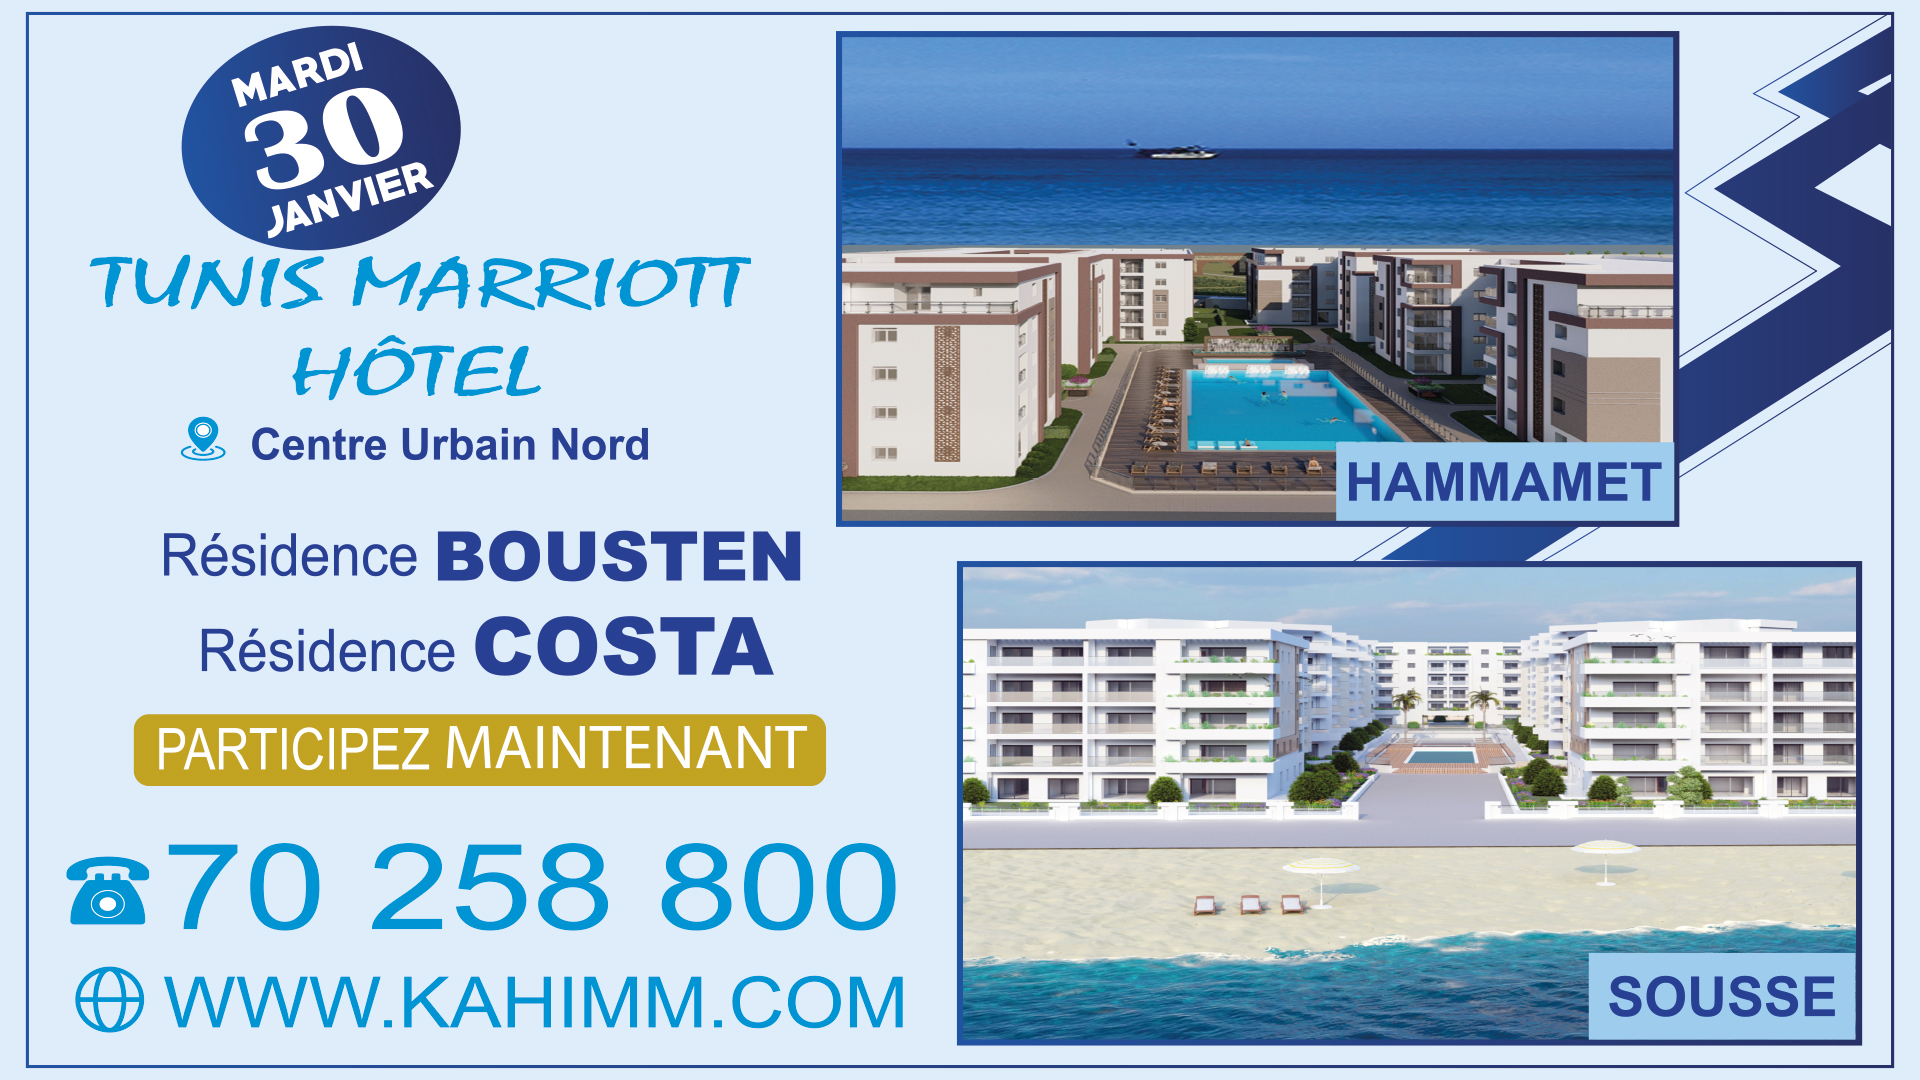 Journée résidences Bousten & Costa @ Hôtel Mariott Tunis